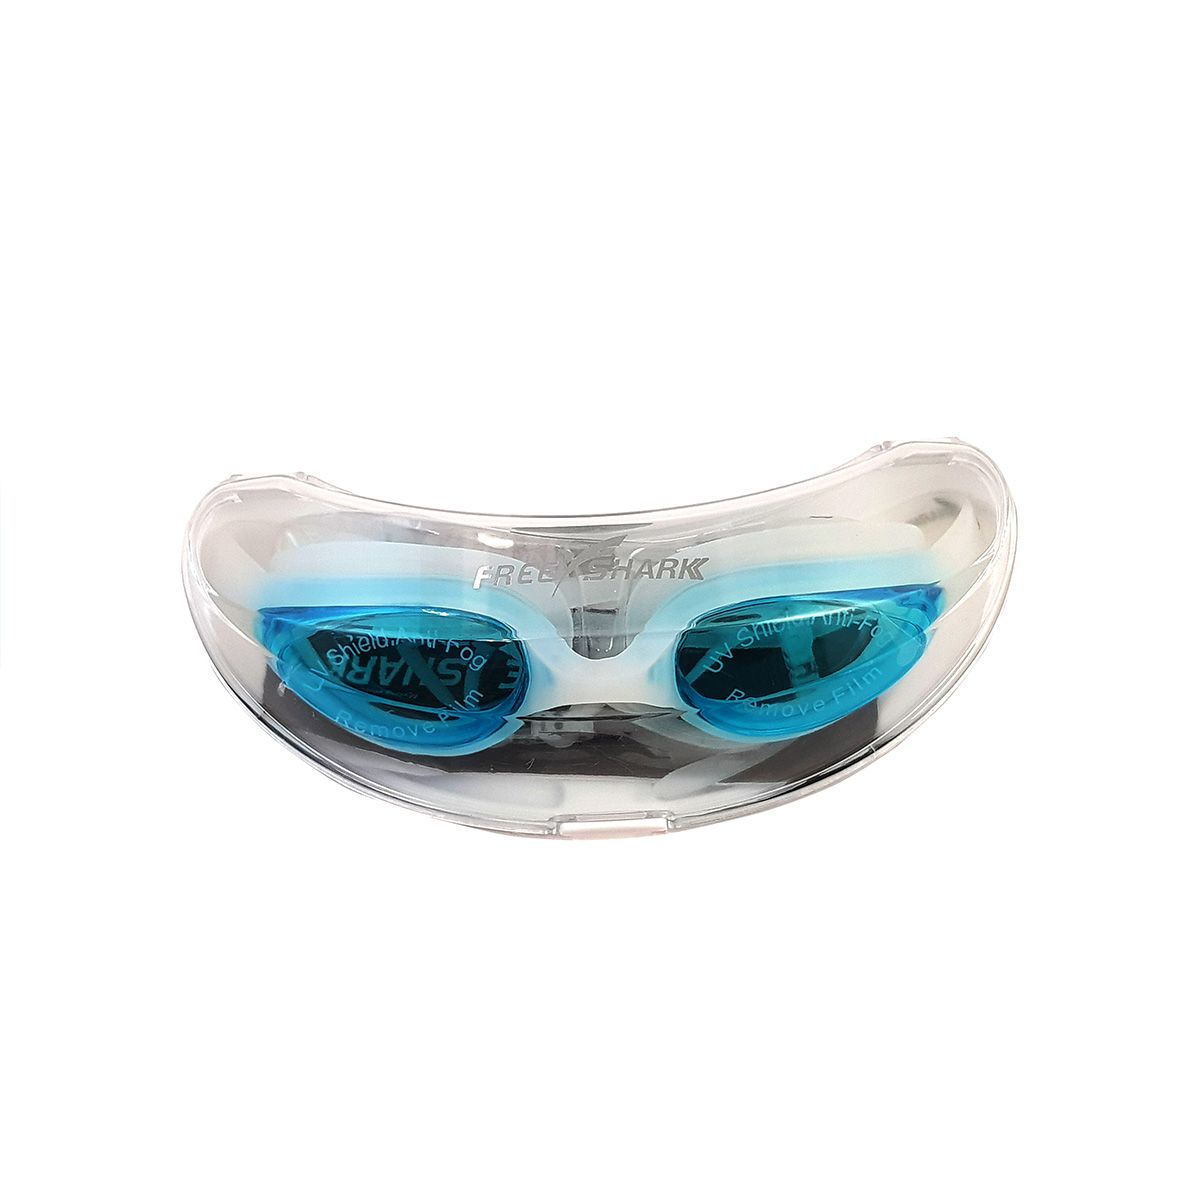  عینک شنا فری شارک مدل YG-2300 -  - 11